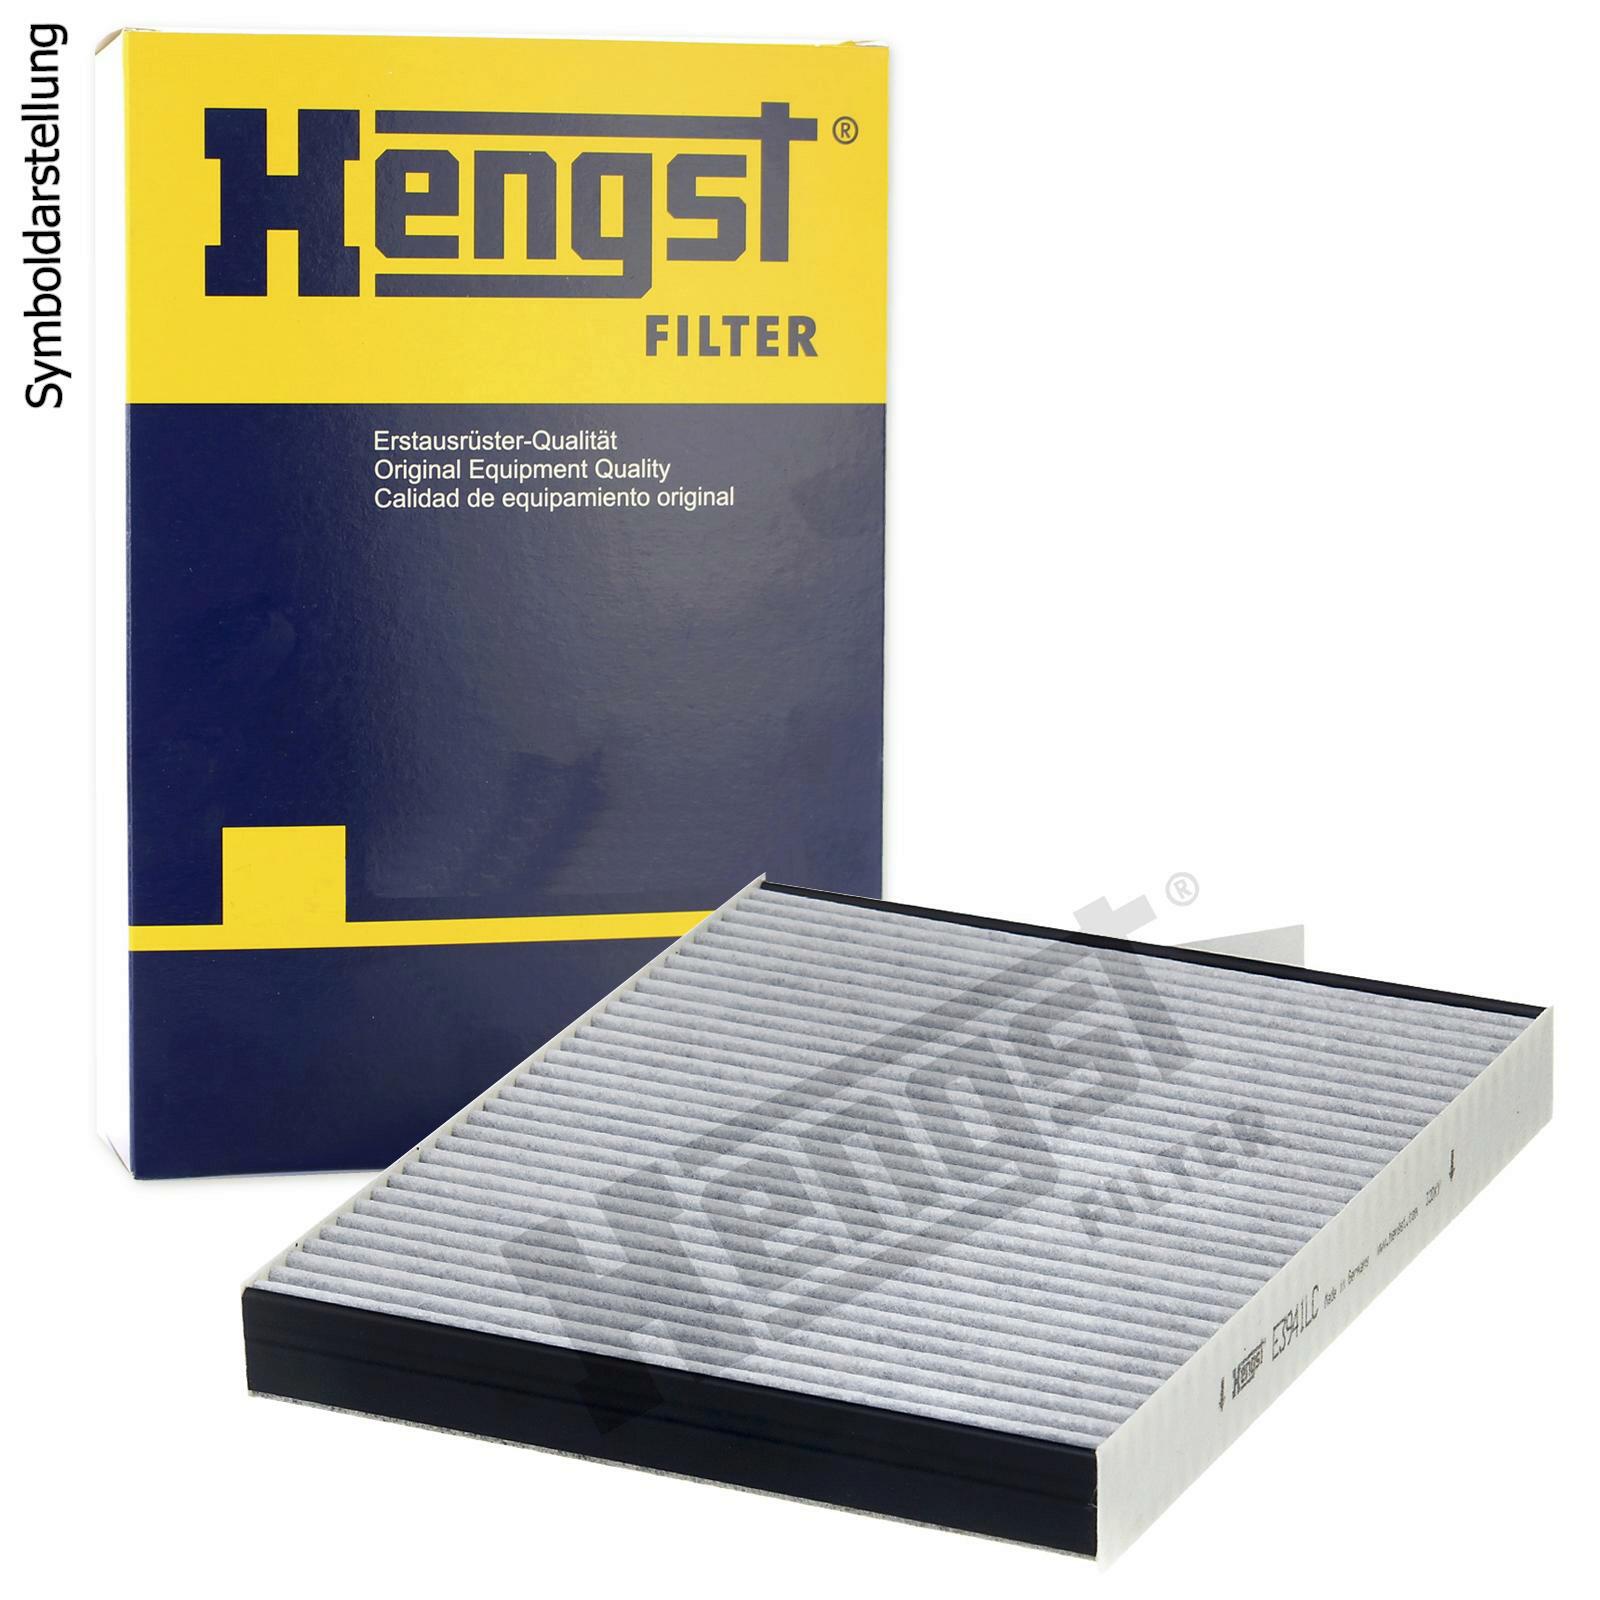 HENGST FILTER Filter, interior air